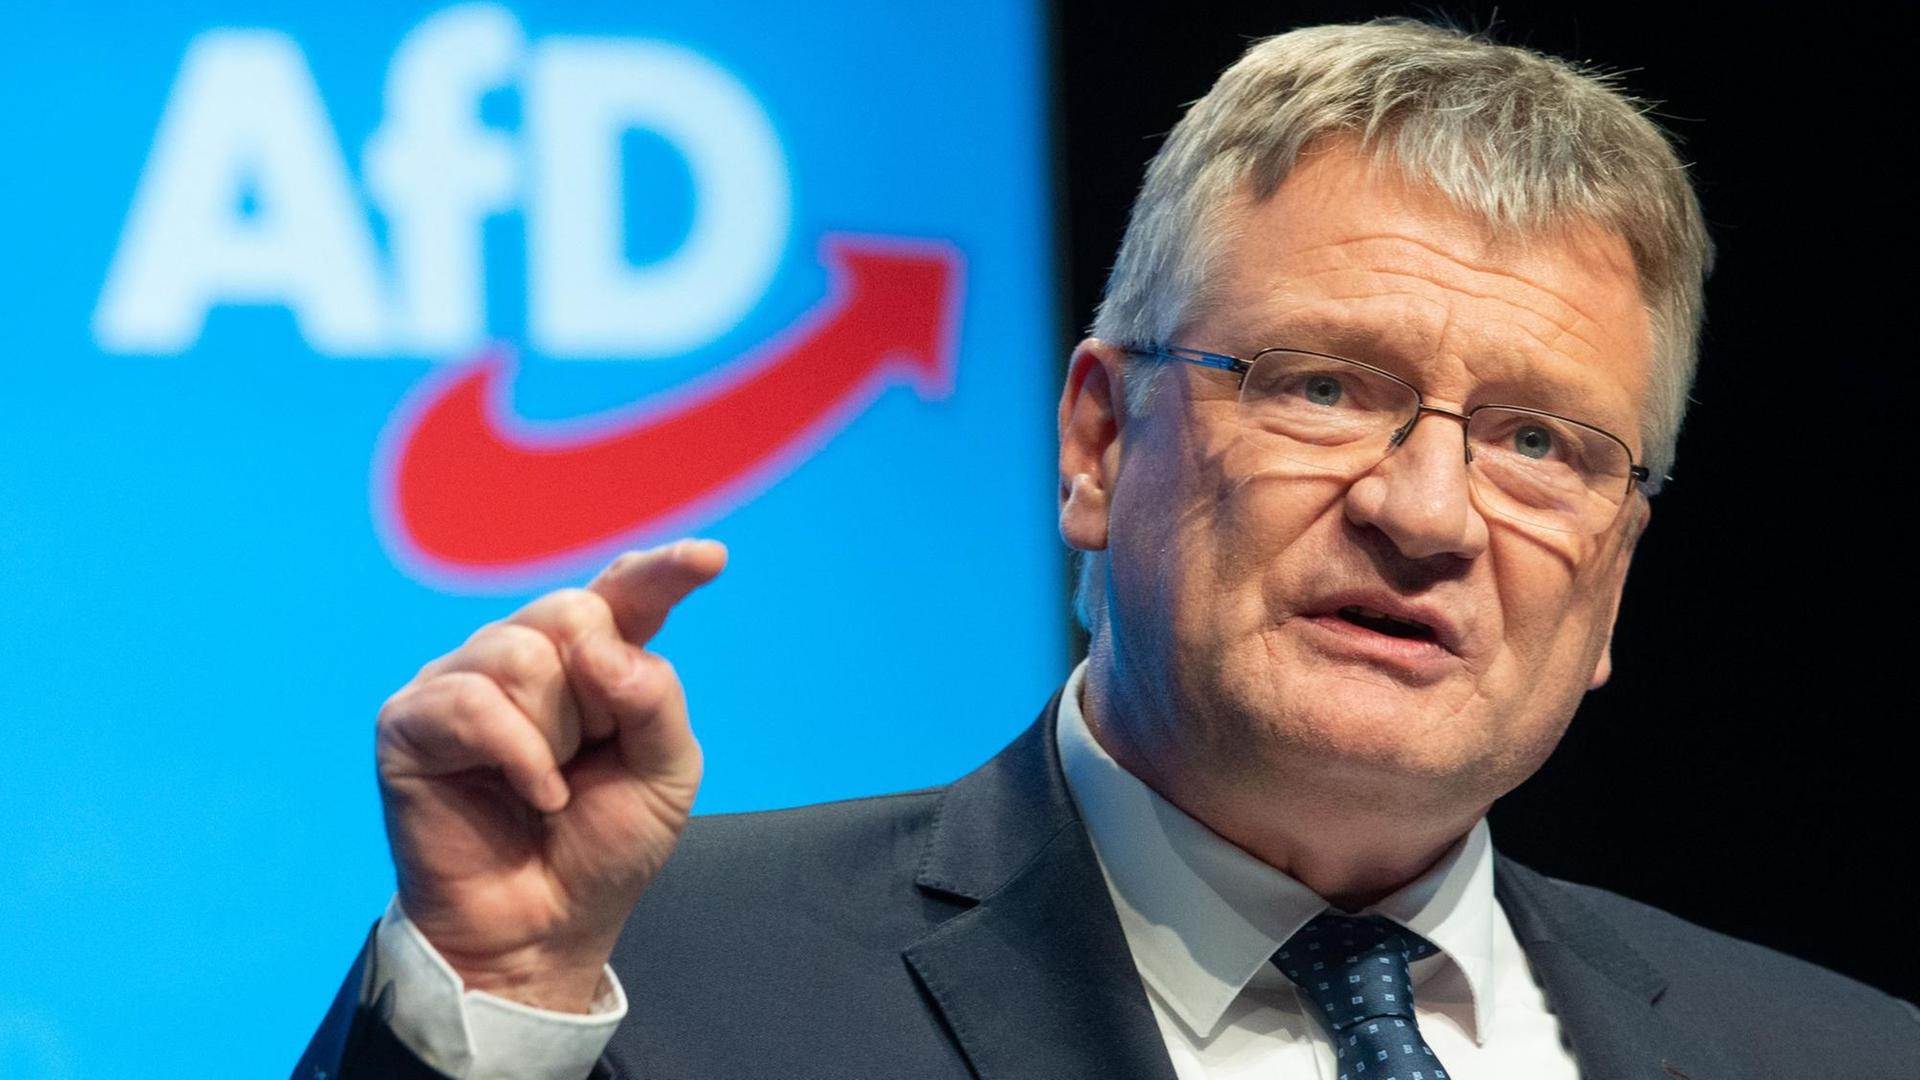  Jörg Meuthen, Bundessprecher der AfD, spricht 2019 beim Parteitag in Braunschweig. 